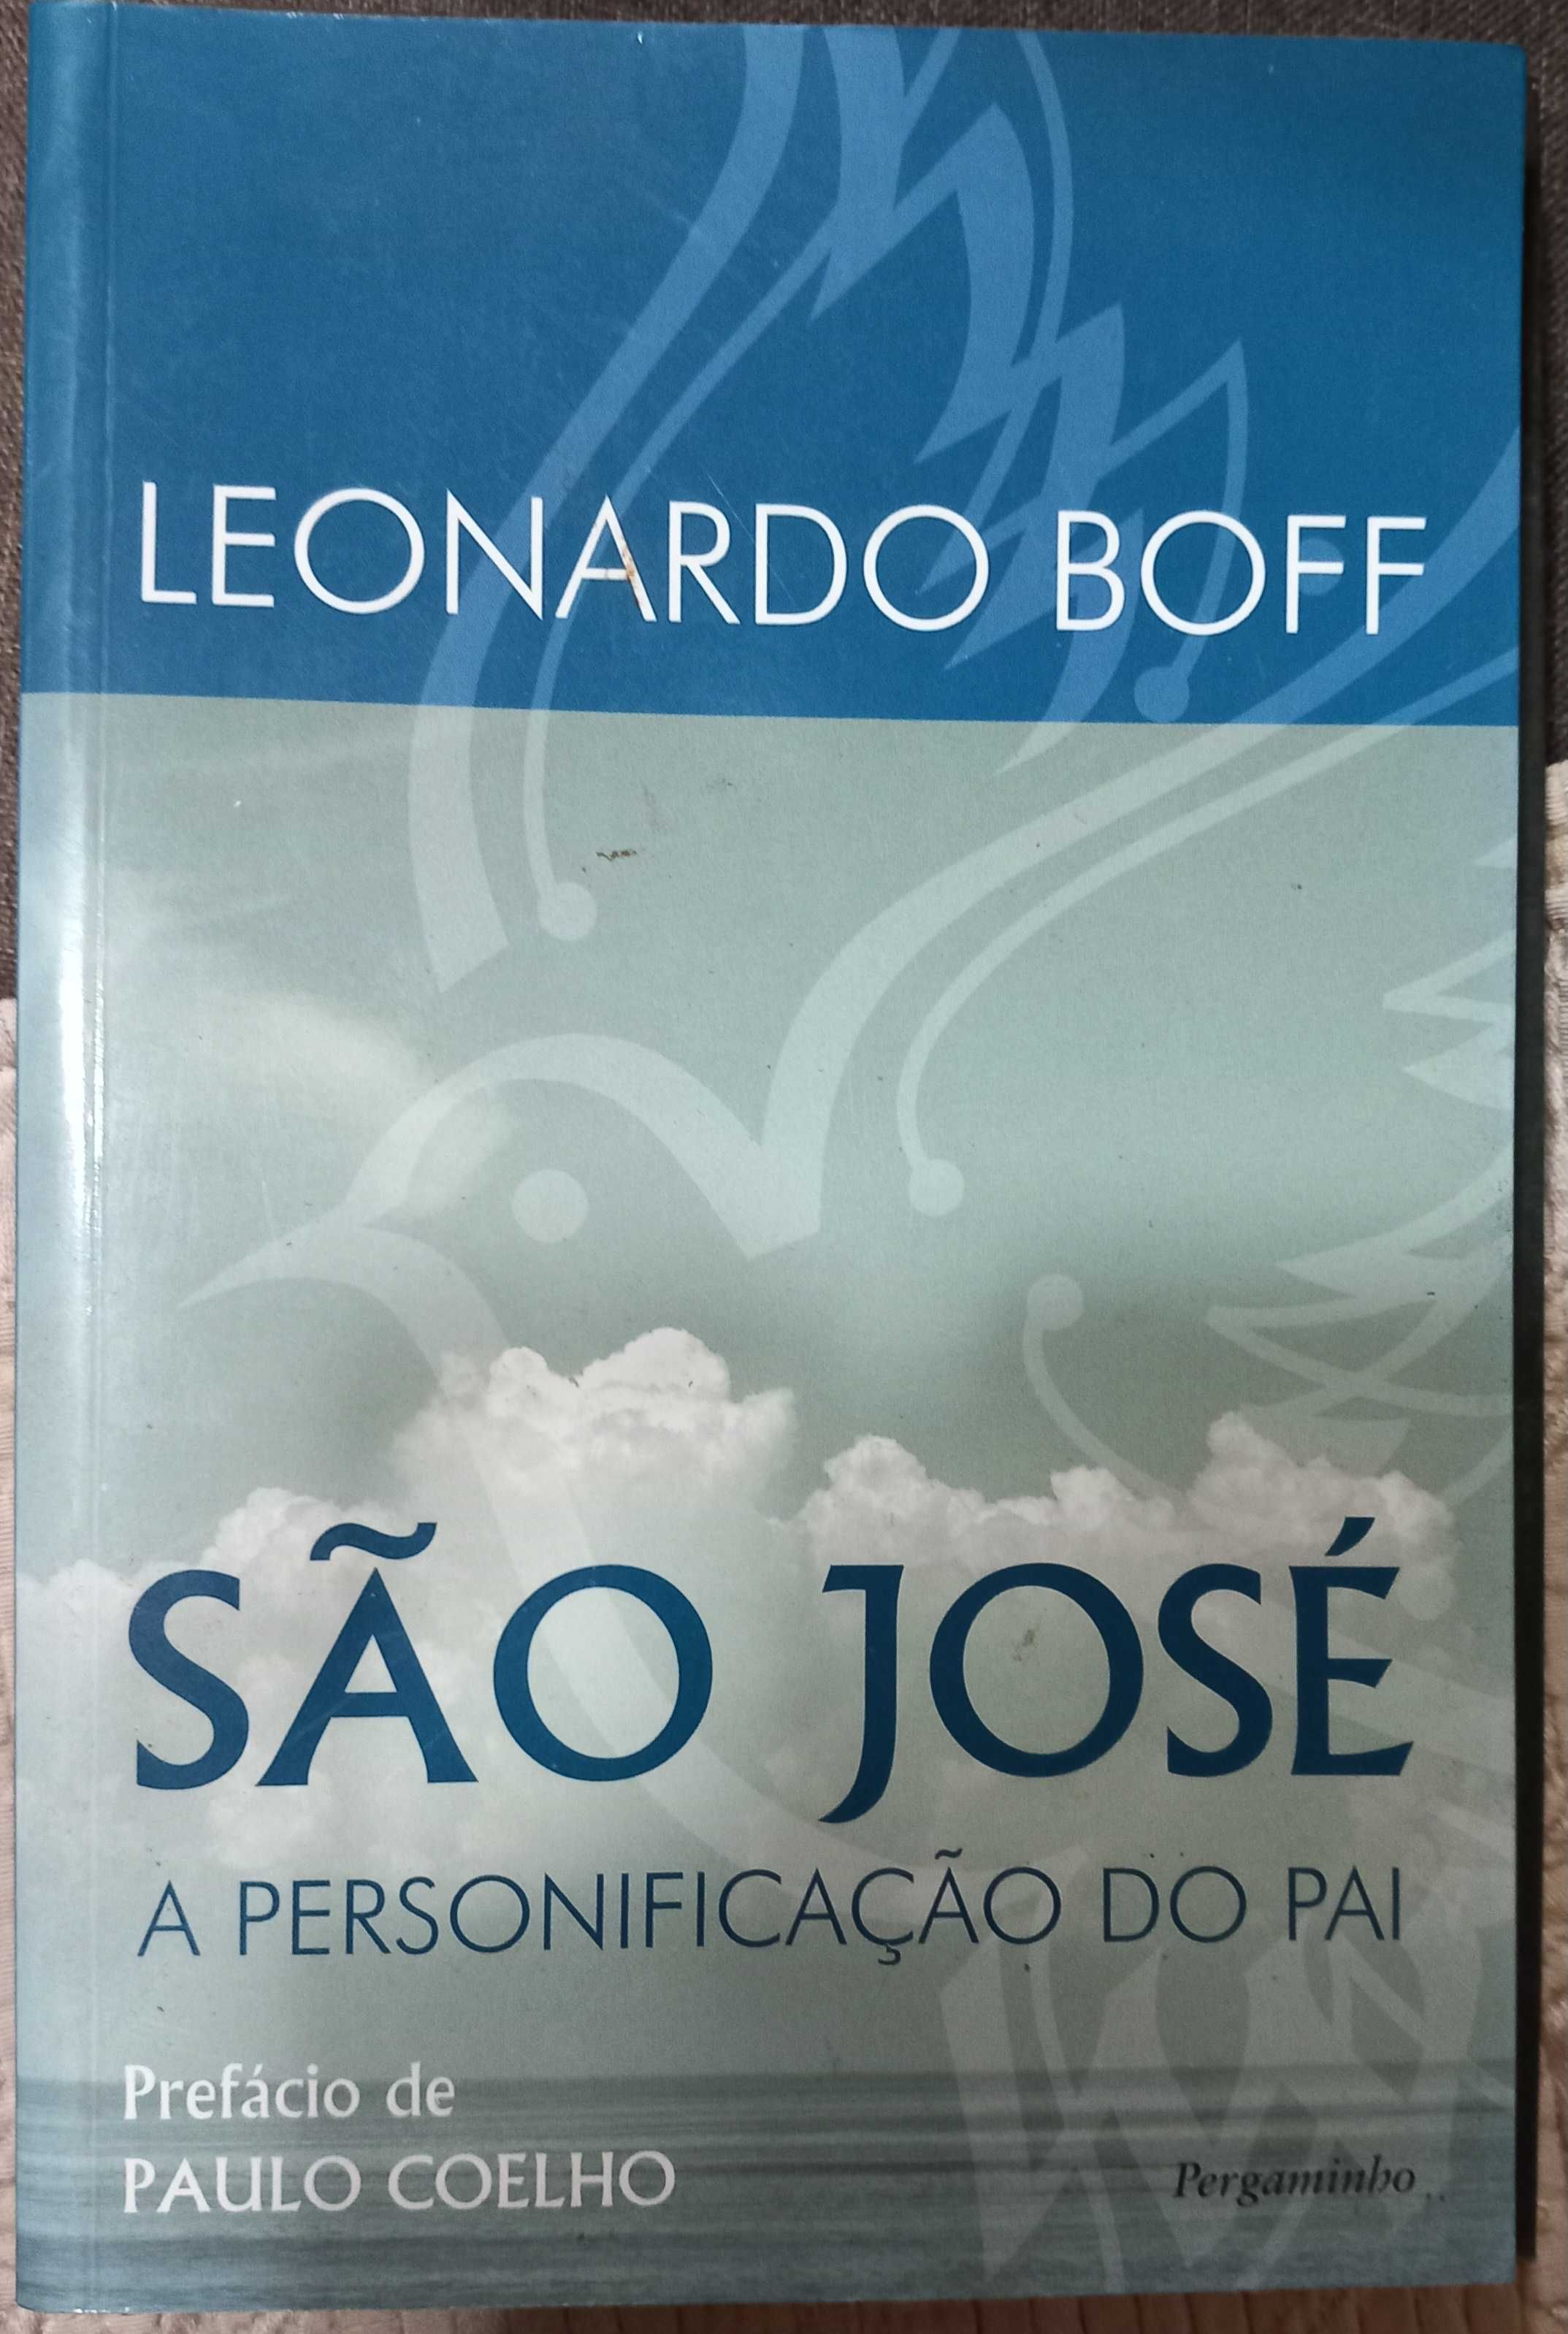 Livro - São José de Leonardo Boff